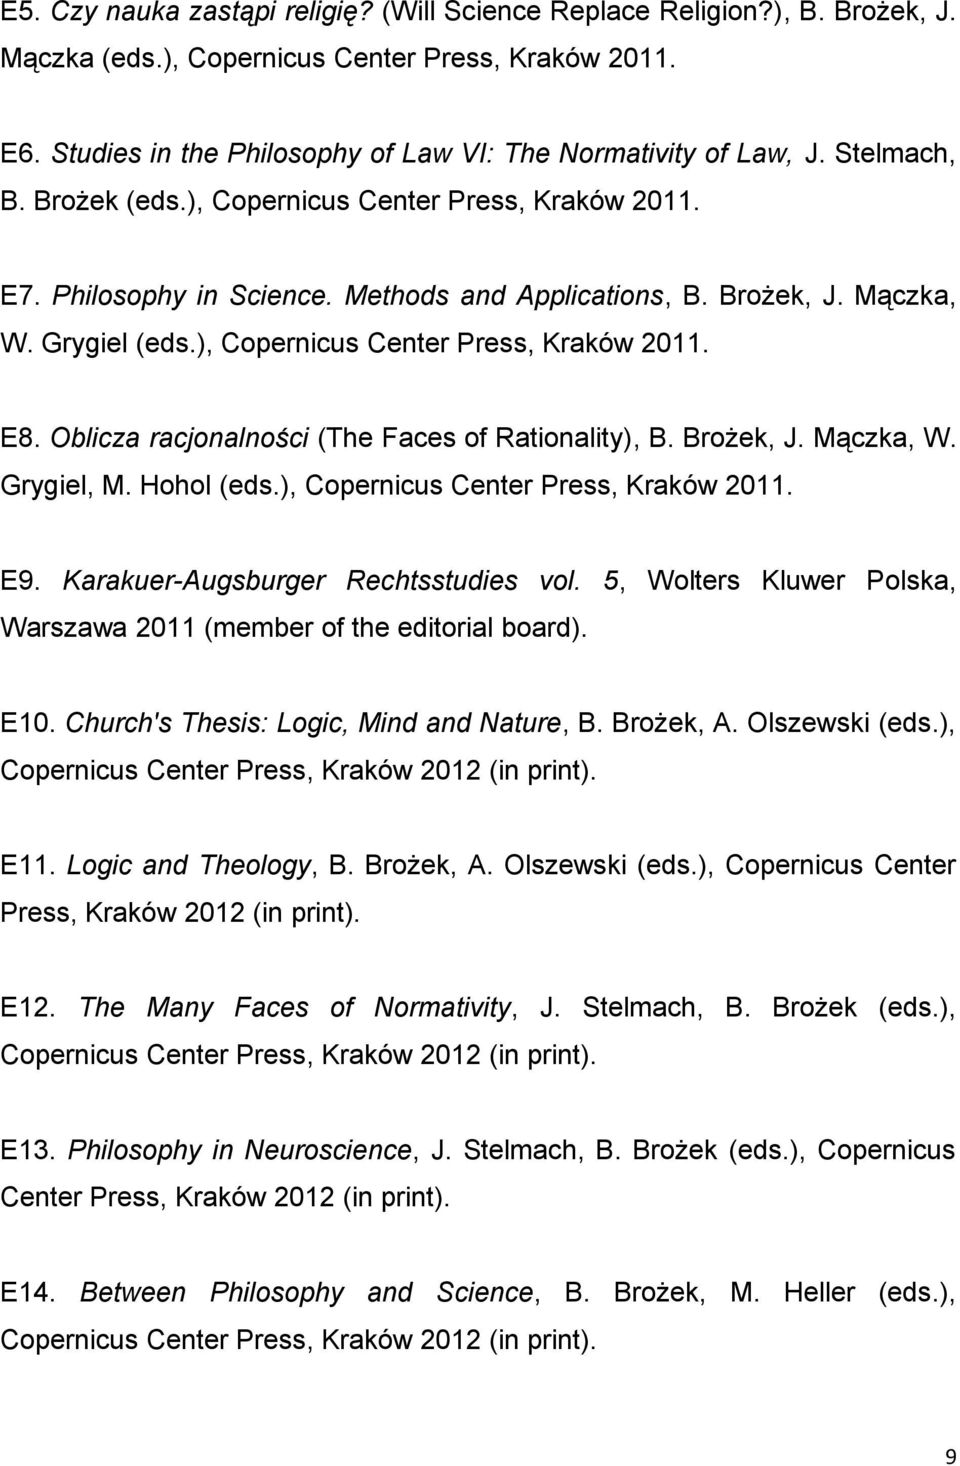 Oblicza racjonalności (The Faces of Rationality), B. Brożek, J. Mączka, W. Grygiel, M. Hohol (eds.), Copernicus Center Press, Kraków 2011. E9. Karakuer-Augsburger Rechtsstudies vol.